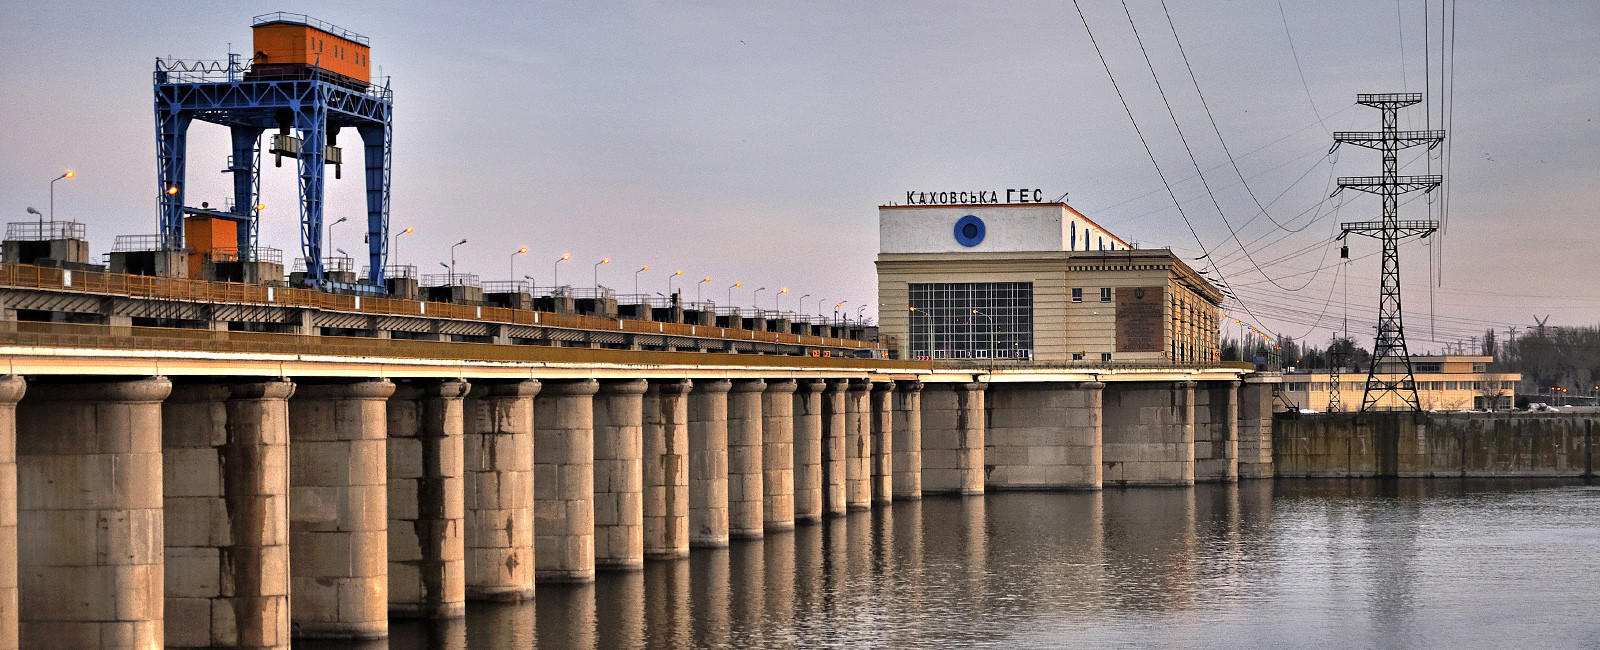 Мост в районе Каховской ГЭС стал непригодным для использования — ОК «Юг»